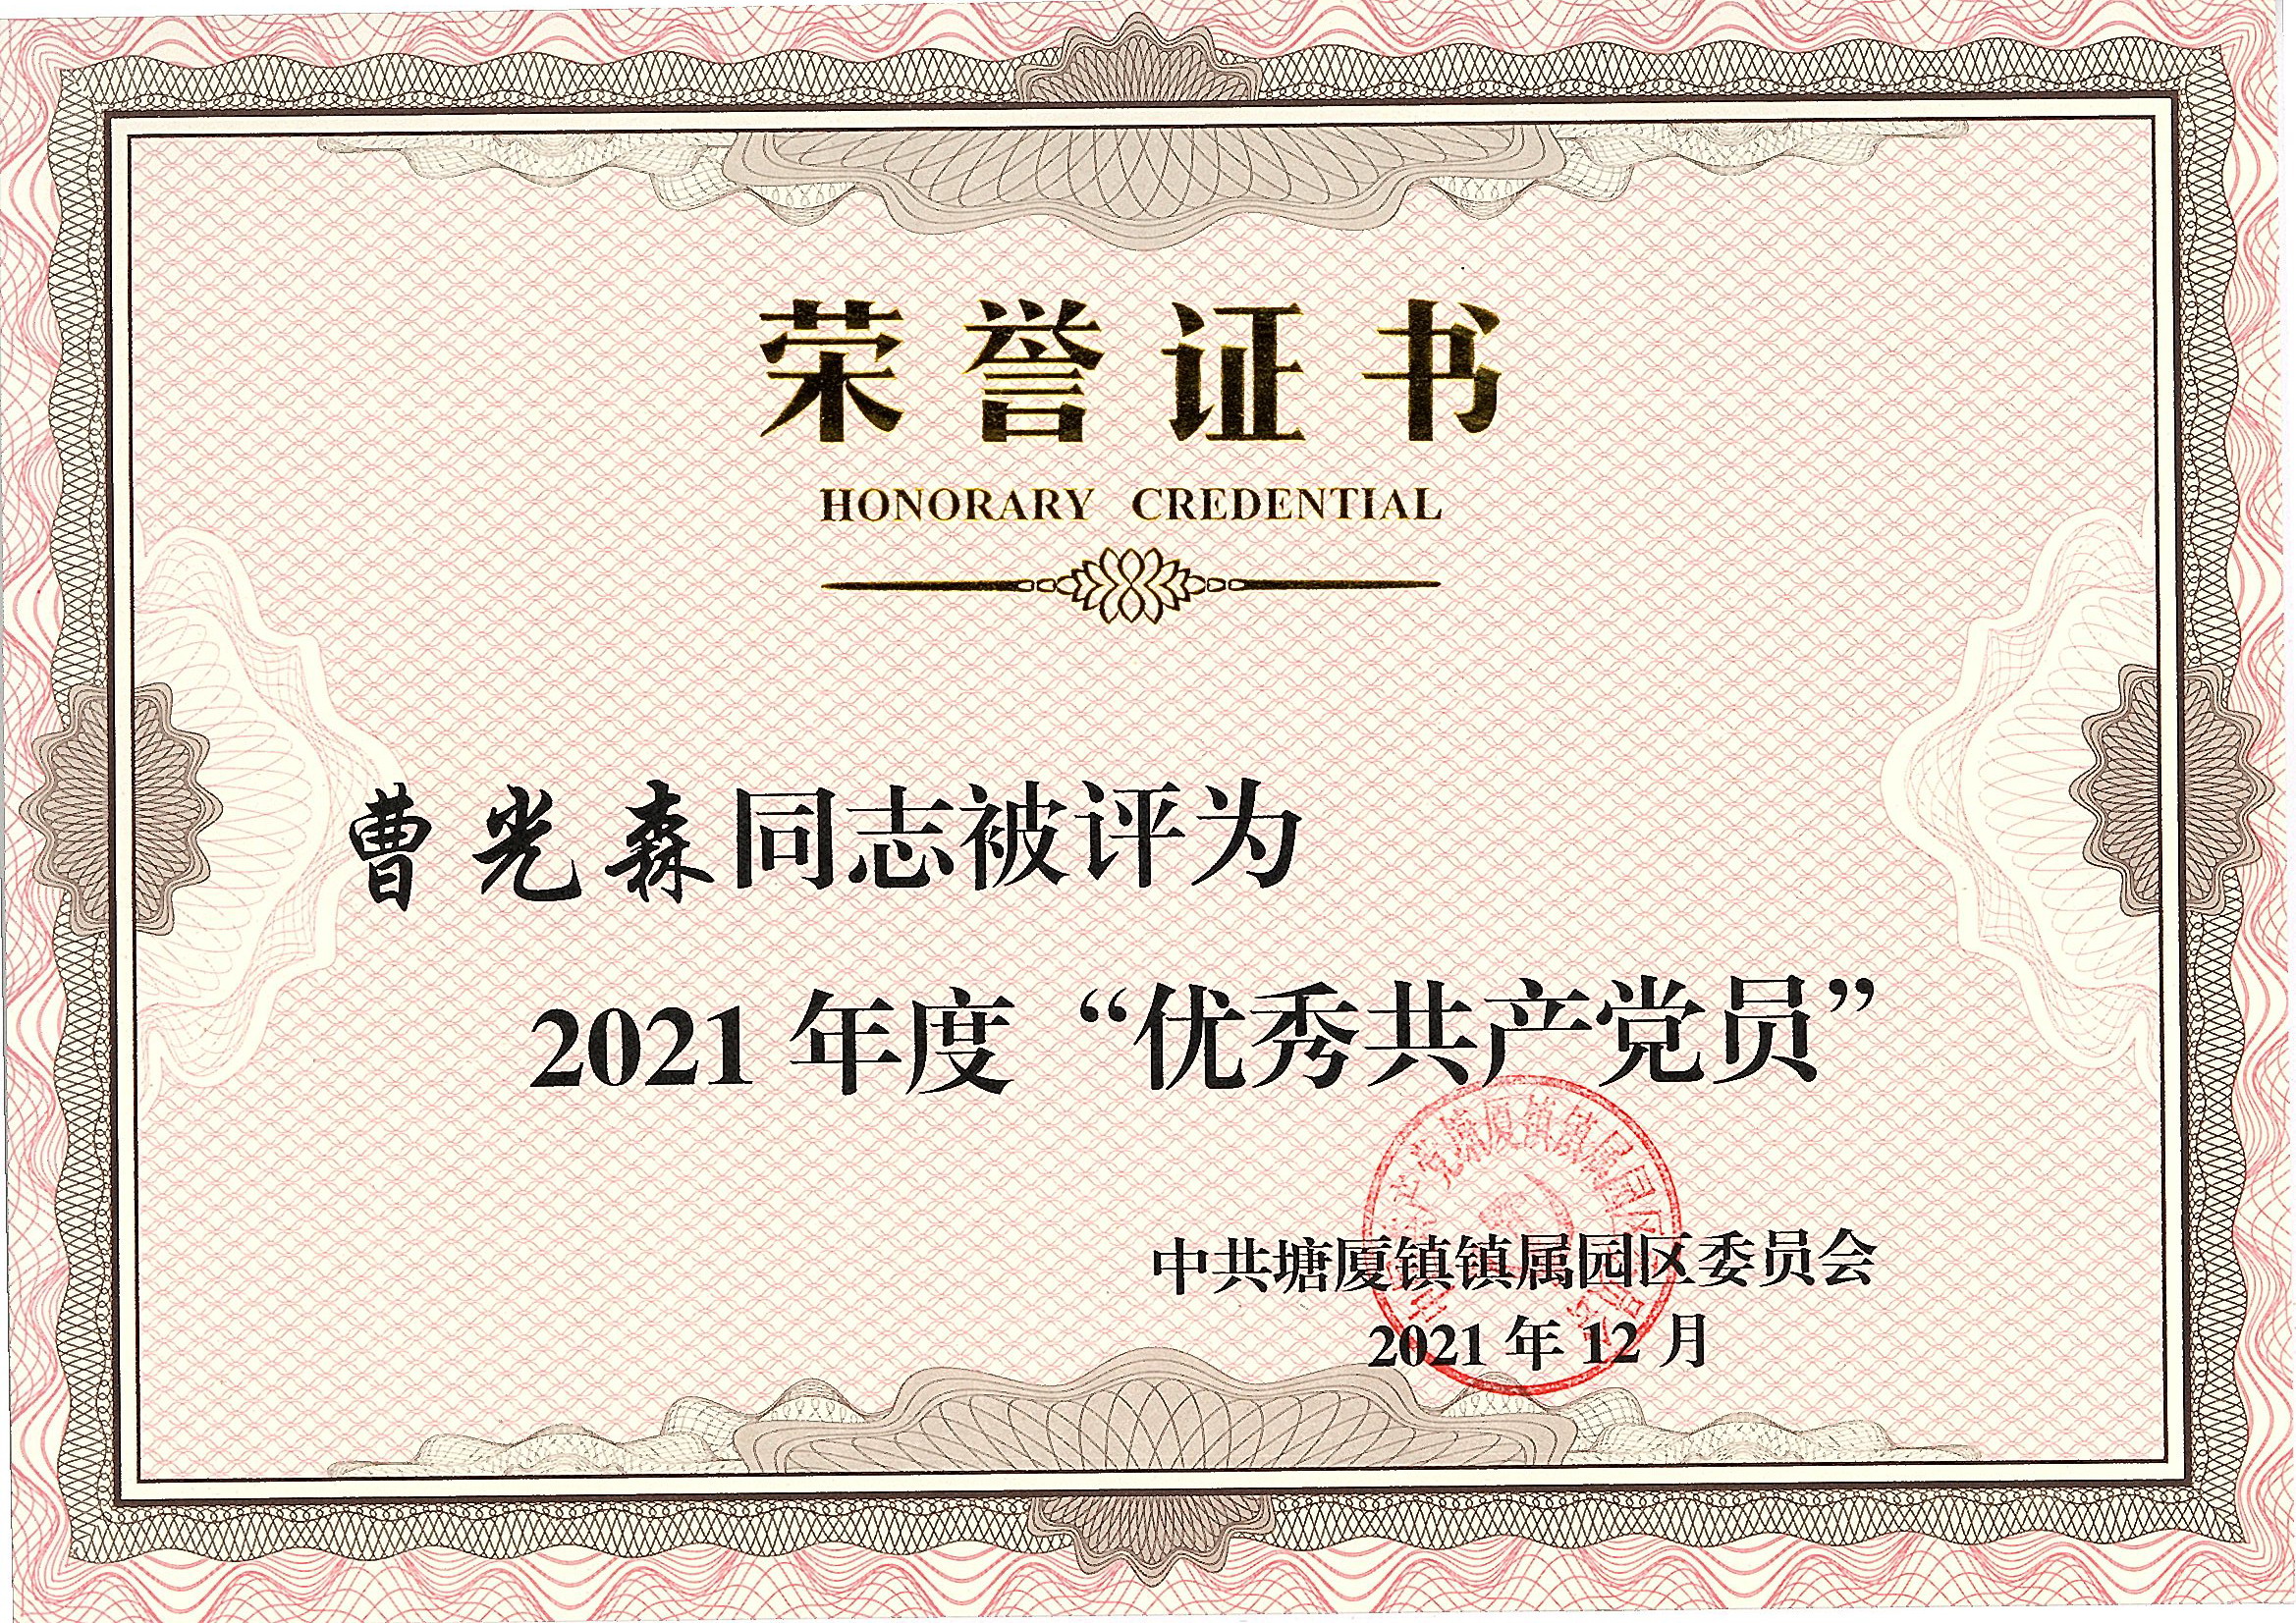 曹光森被评为2021年度优秀共产党员.jpg